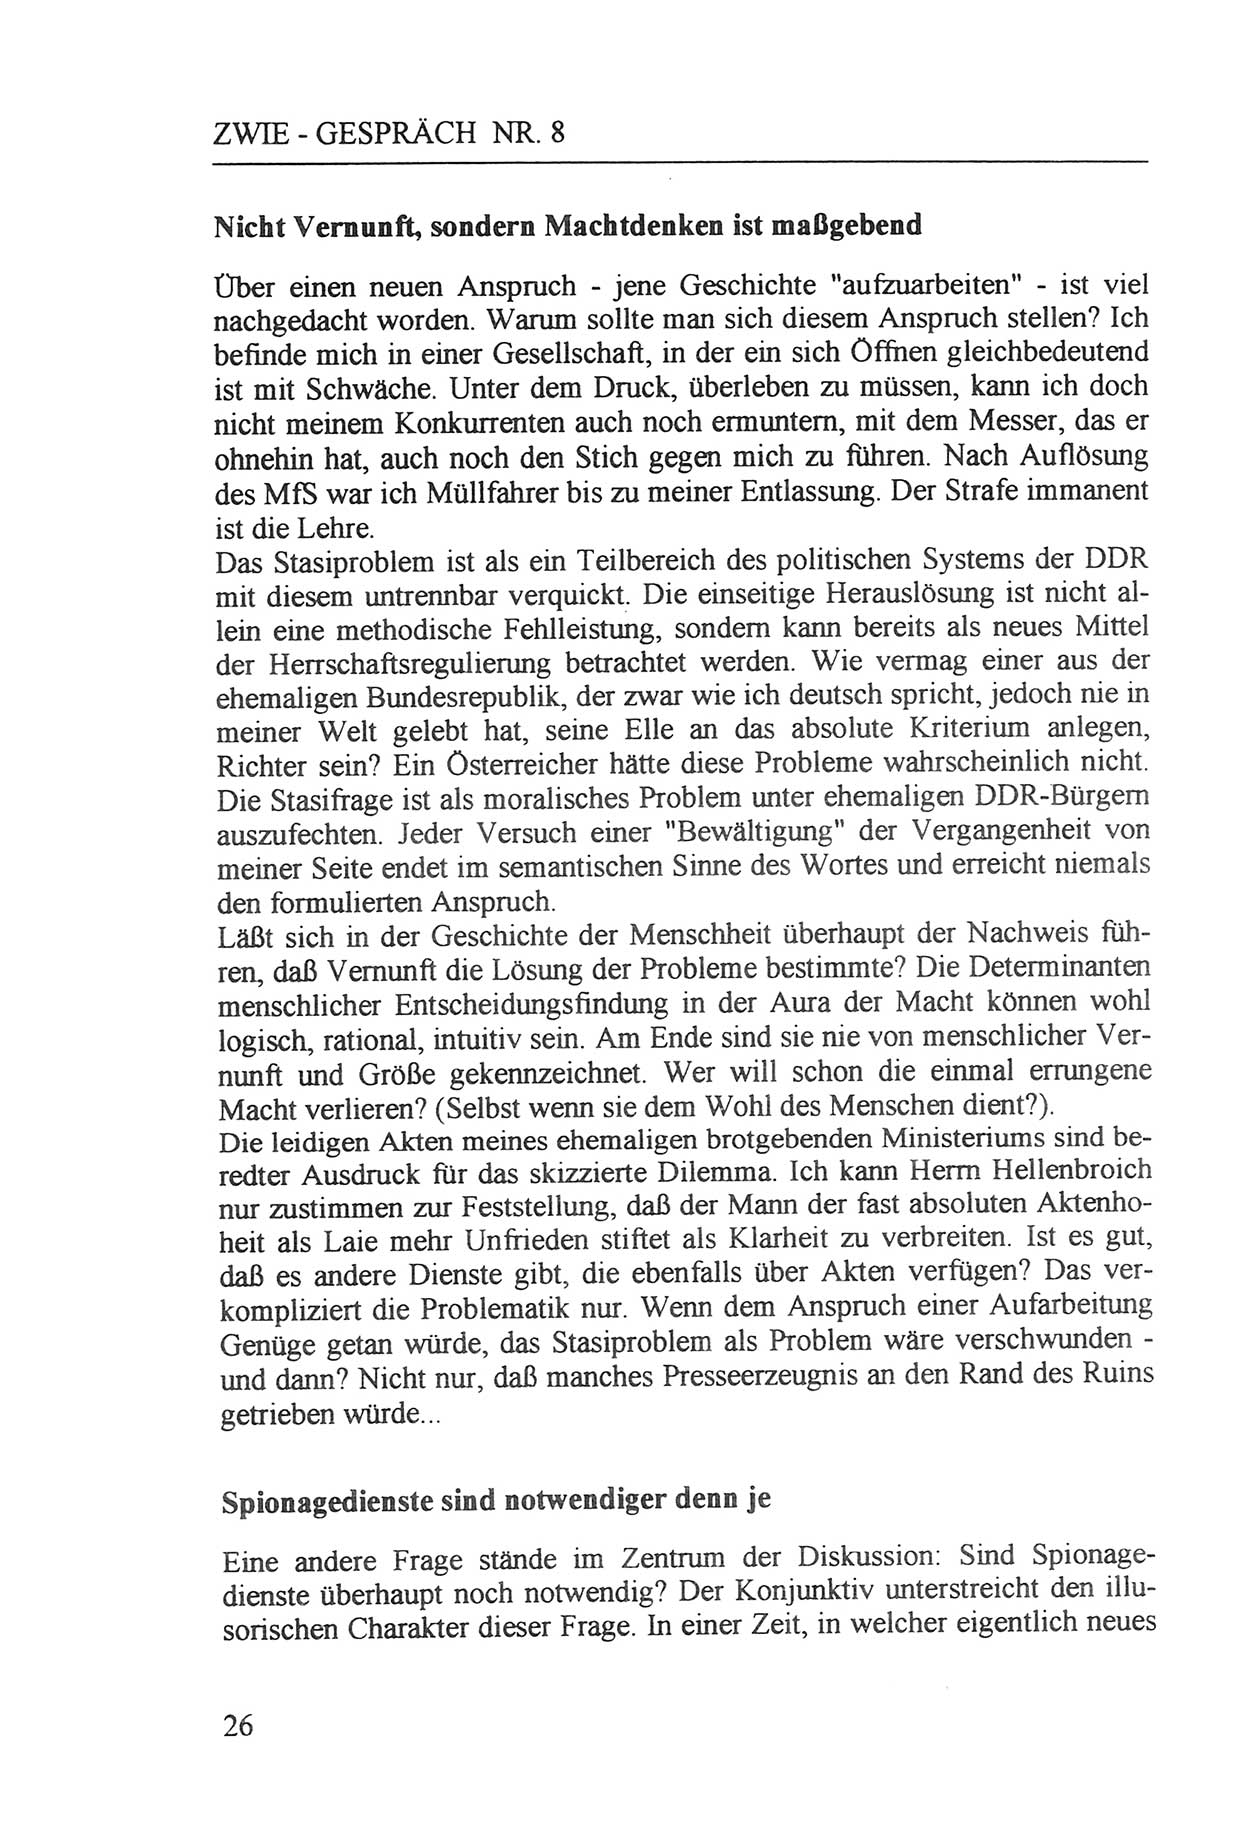 Zwie-Gespräch, Beiträge zur Aufarbeitung der Staatssicherheits-Vergangenheit [Deutsche Demokratische Republik (DDR)], Ausgabe Nr. 8, Berlin 1992, Seite 26 (Zwie-Gespr. Ausg. 8 1992, S. 26)